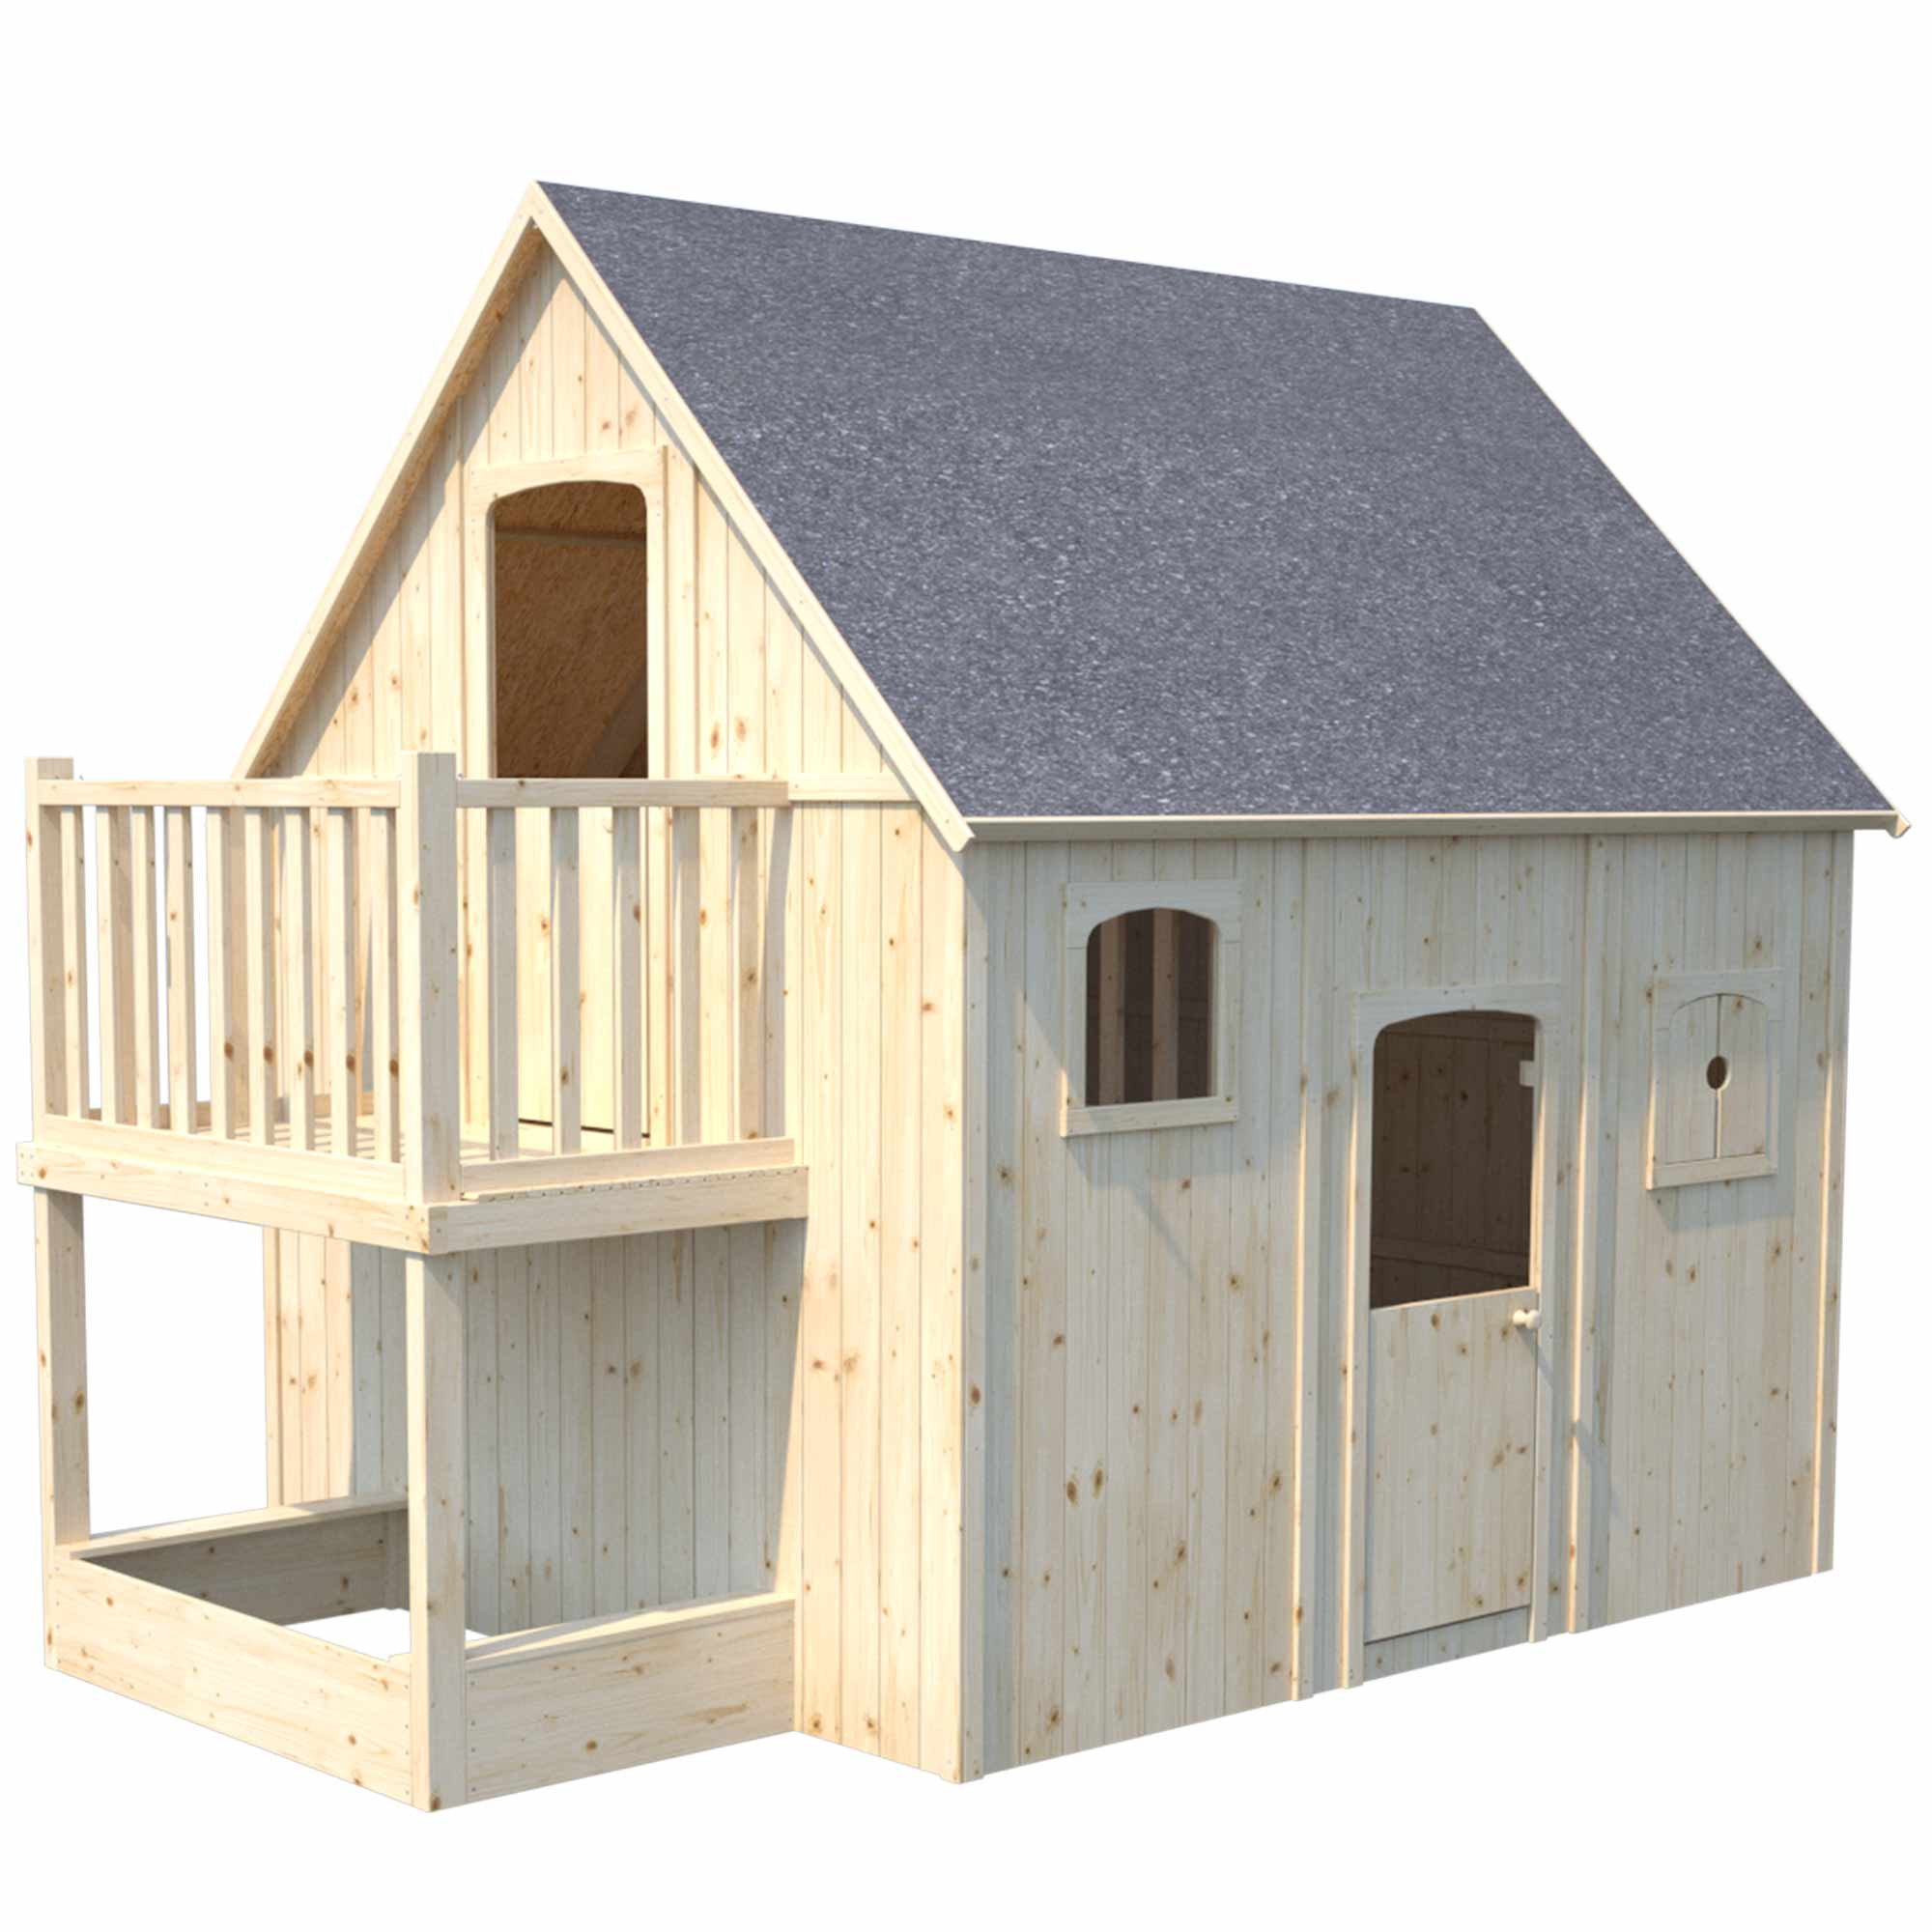 Cabane de jardin en bois, maisonnette pour enfant